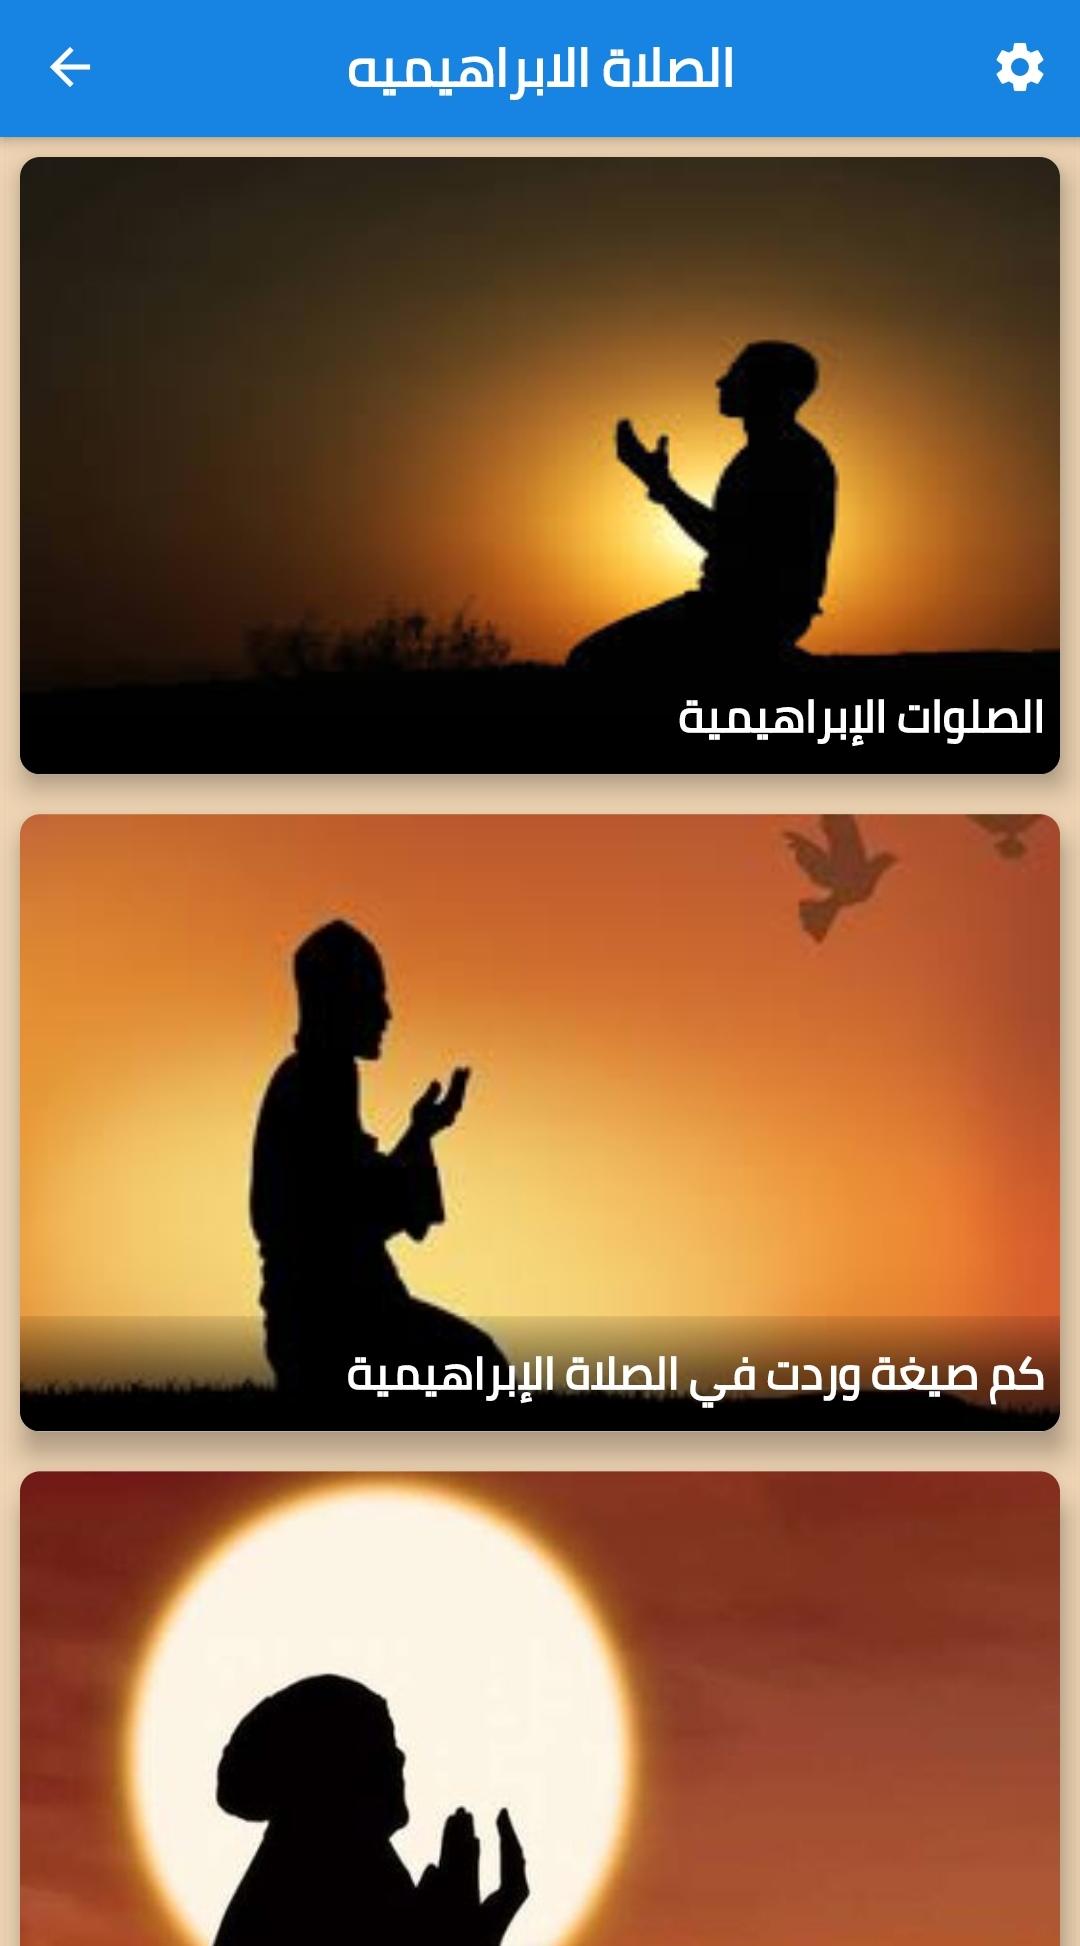 الصلاة الابراهيميه for Android - APK Download